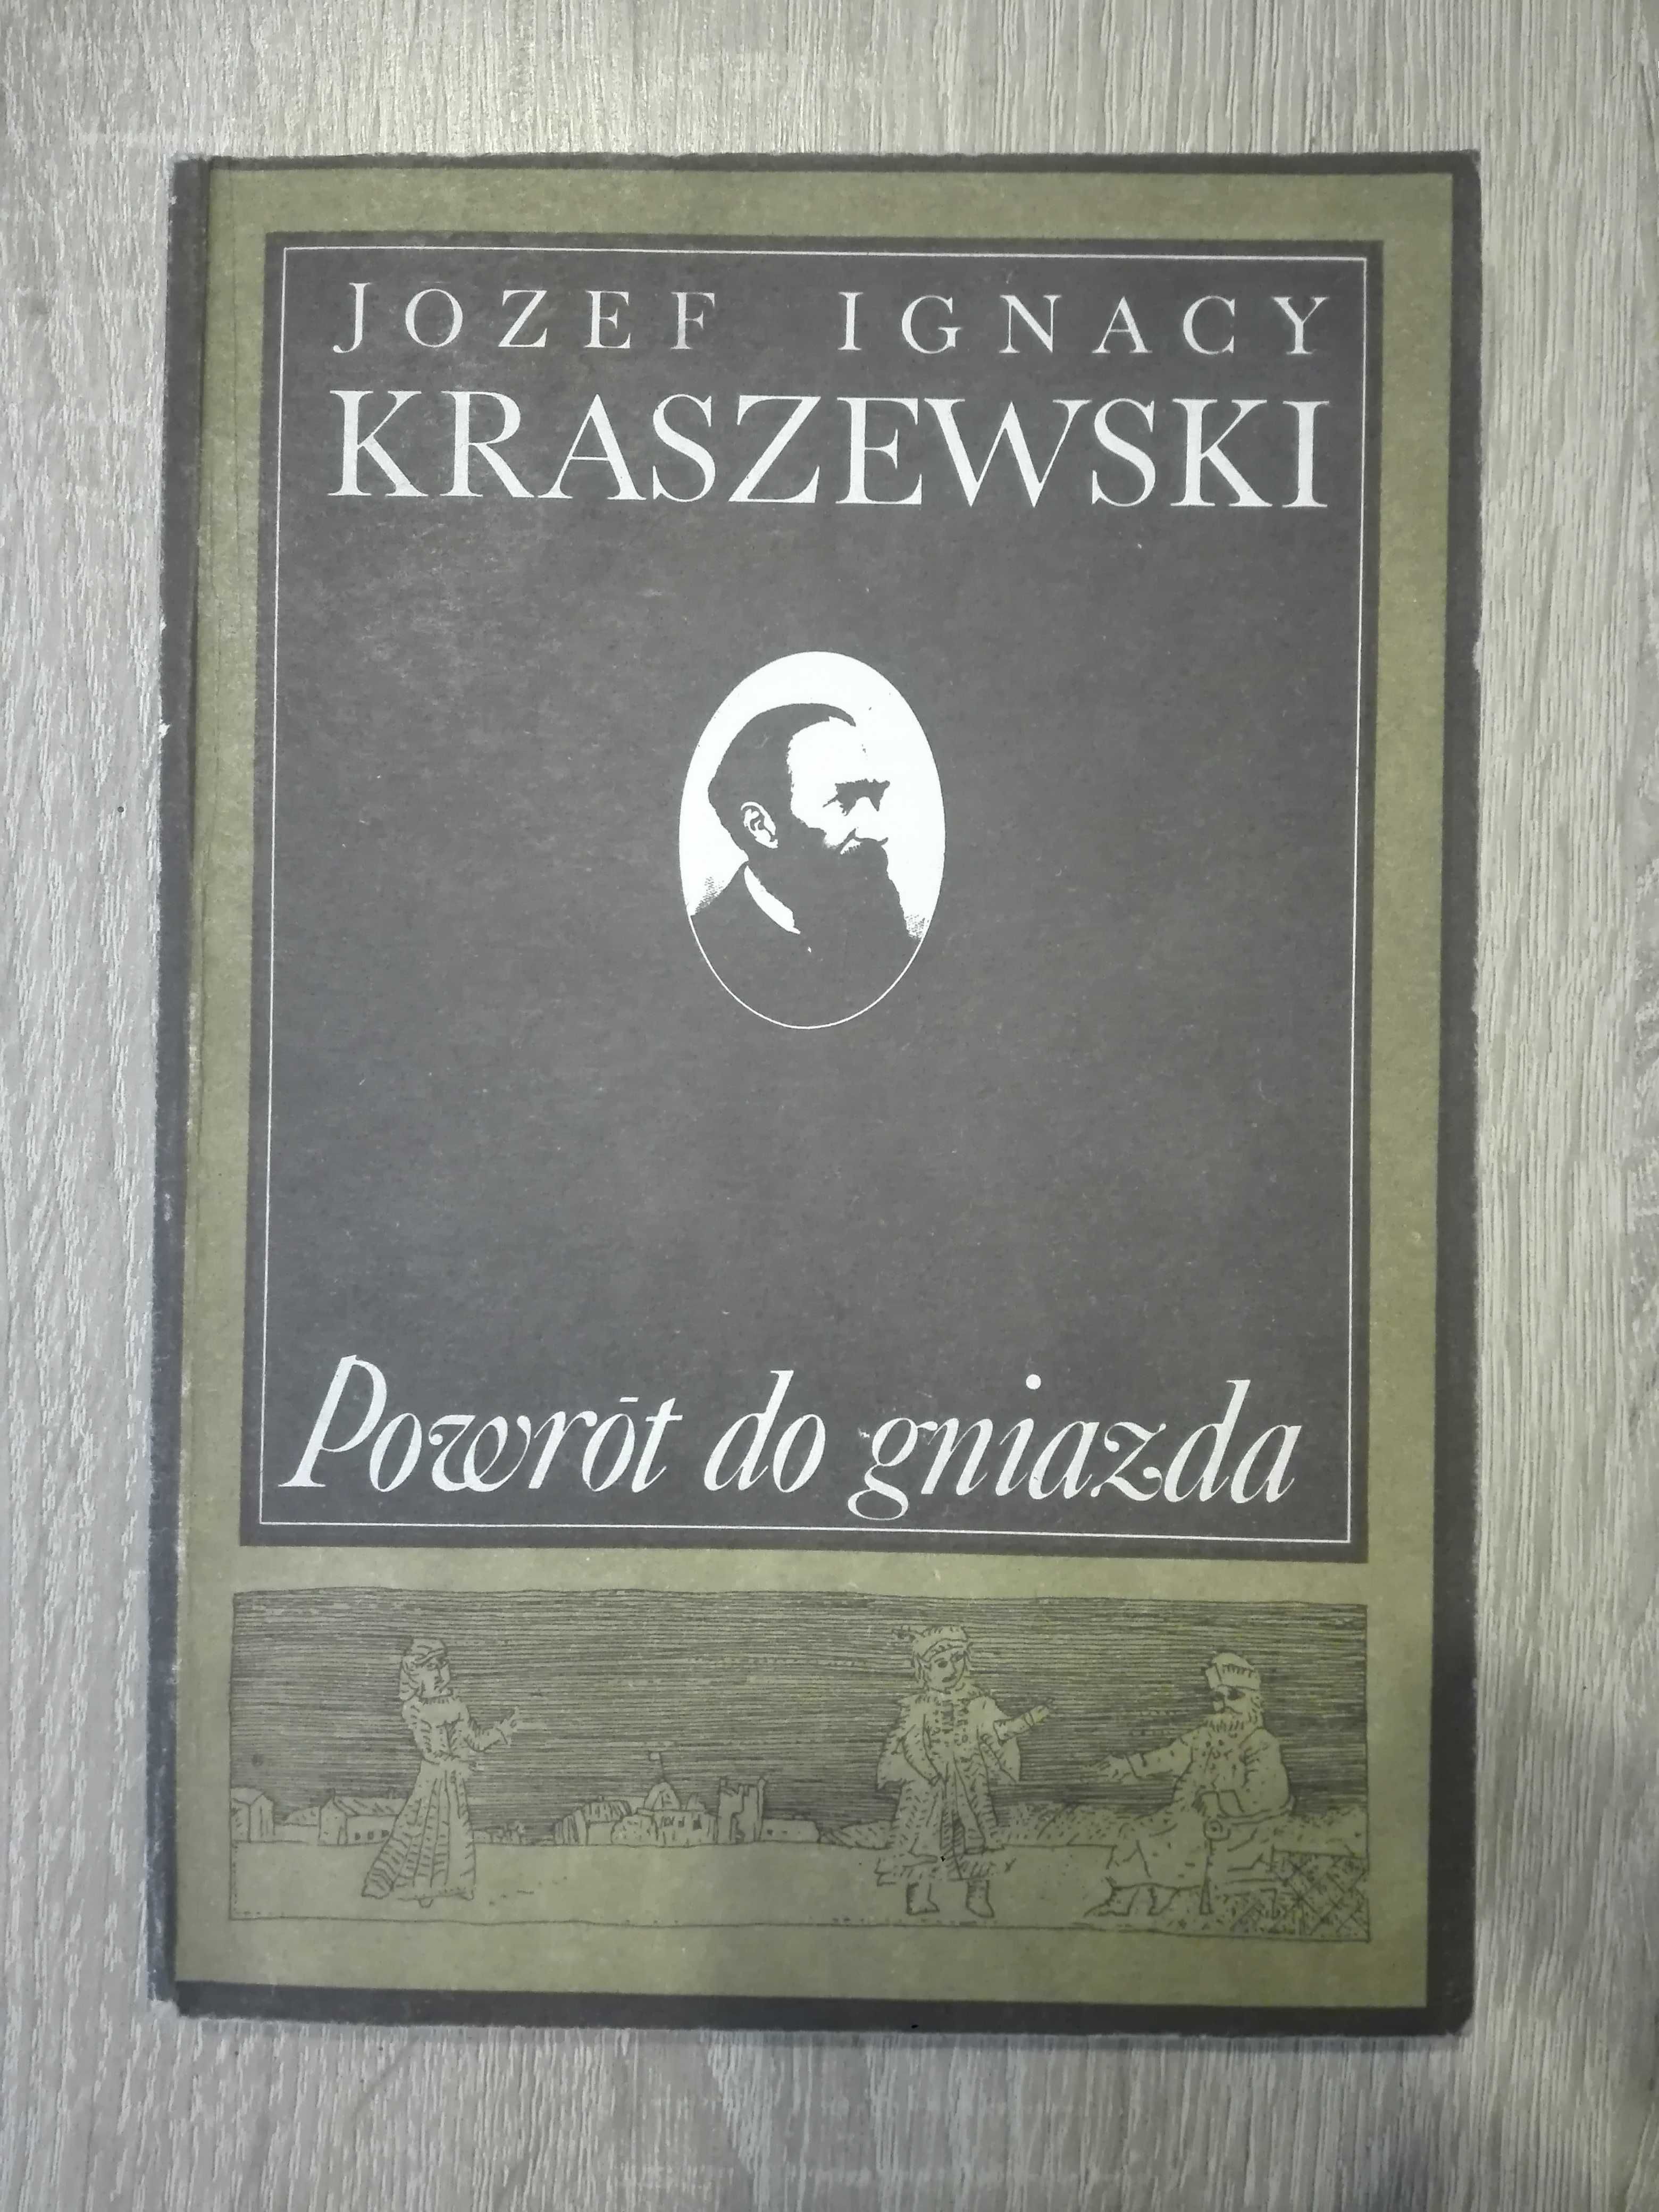 "Powrót do gniazda" Józef Ignacy Kraszewski